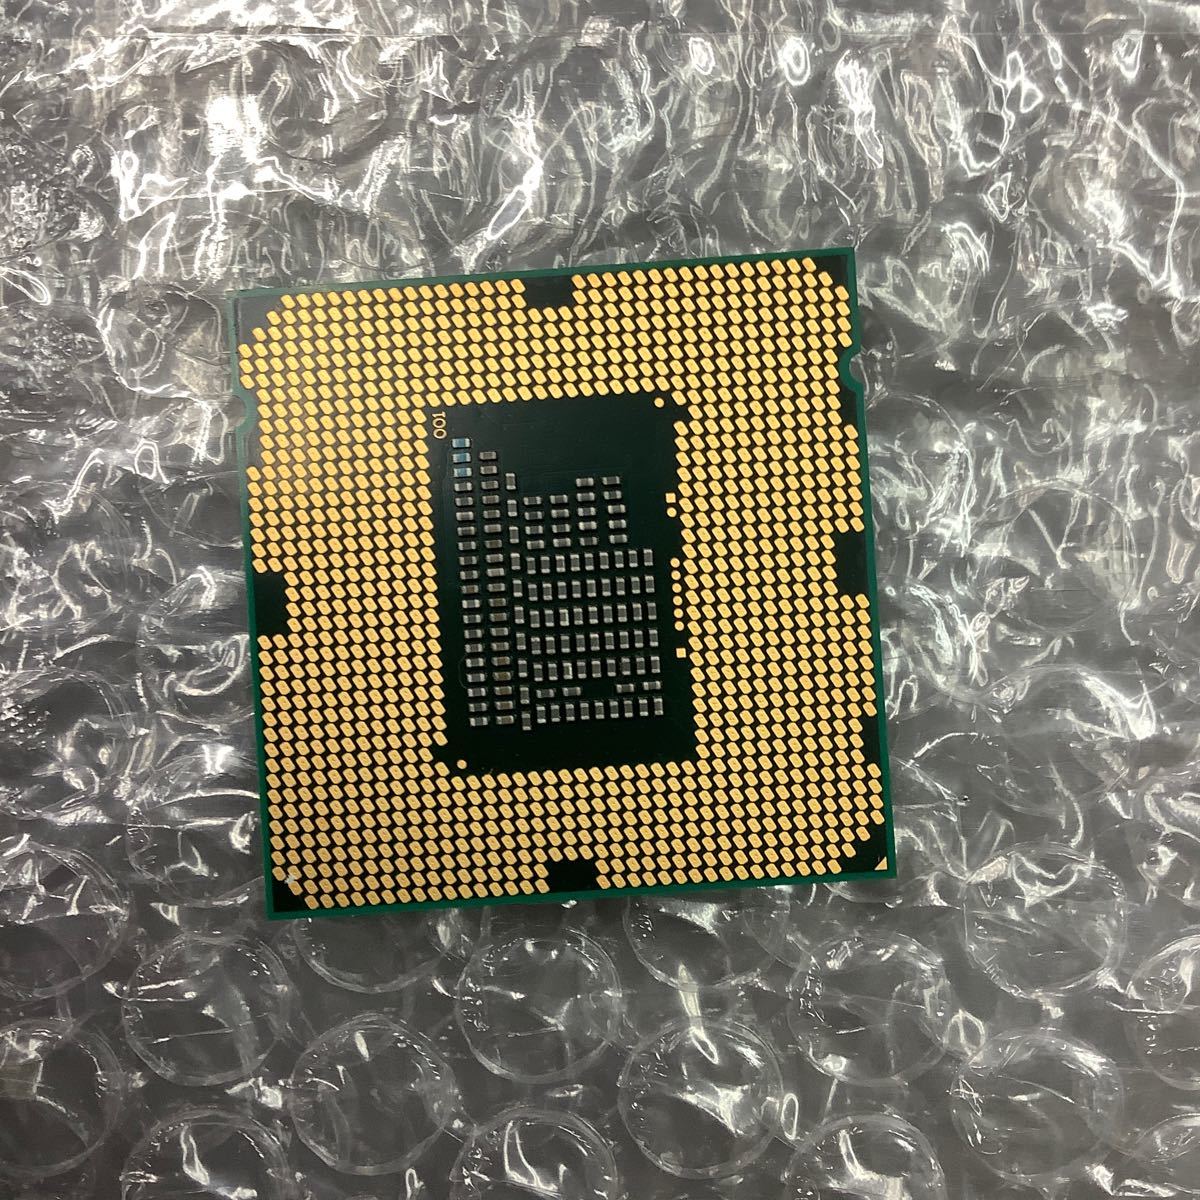 Intel Core i3 2100 CPU